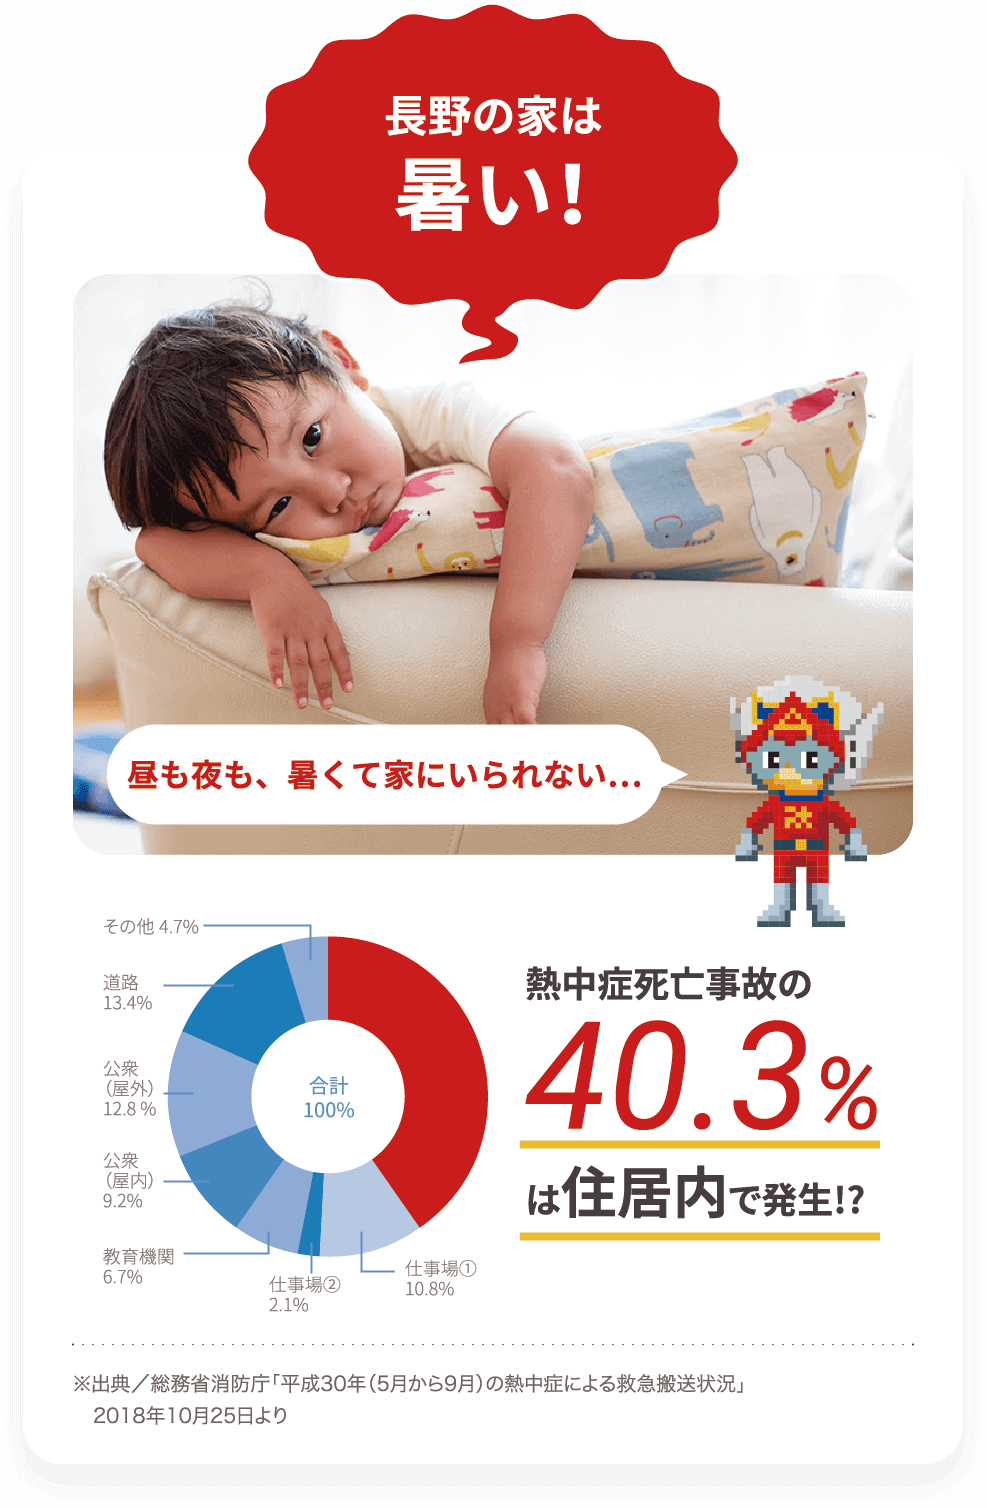 長野の家は熱い！昼も夜も、暑くて家にいられない…。熱中症死亡事故の40.3%は住居内で発生！？